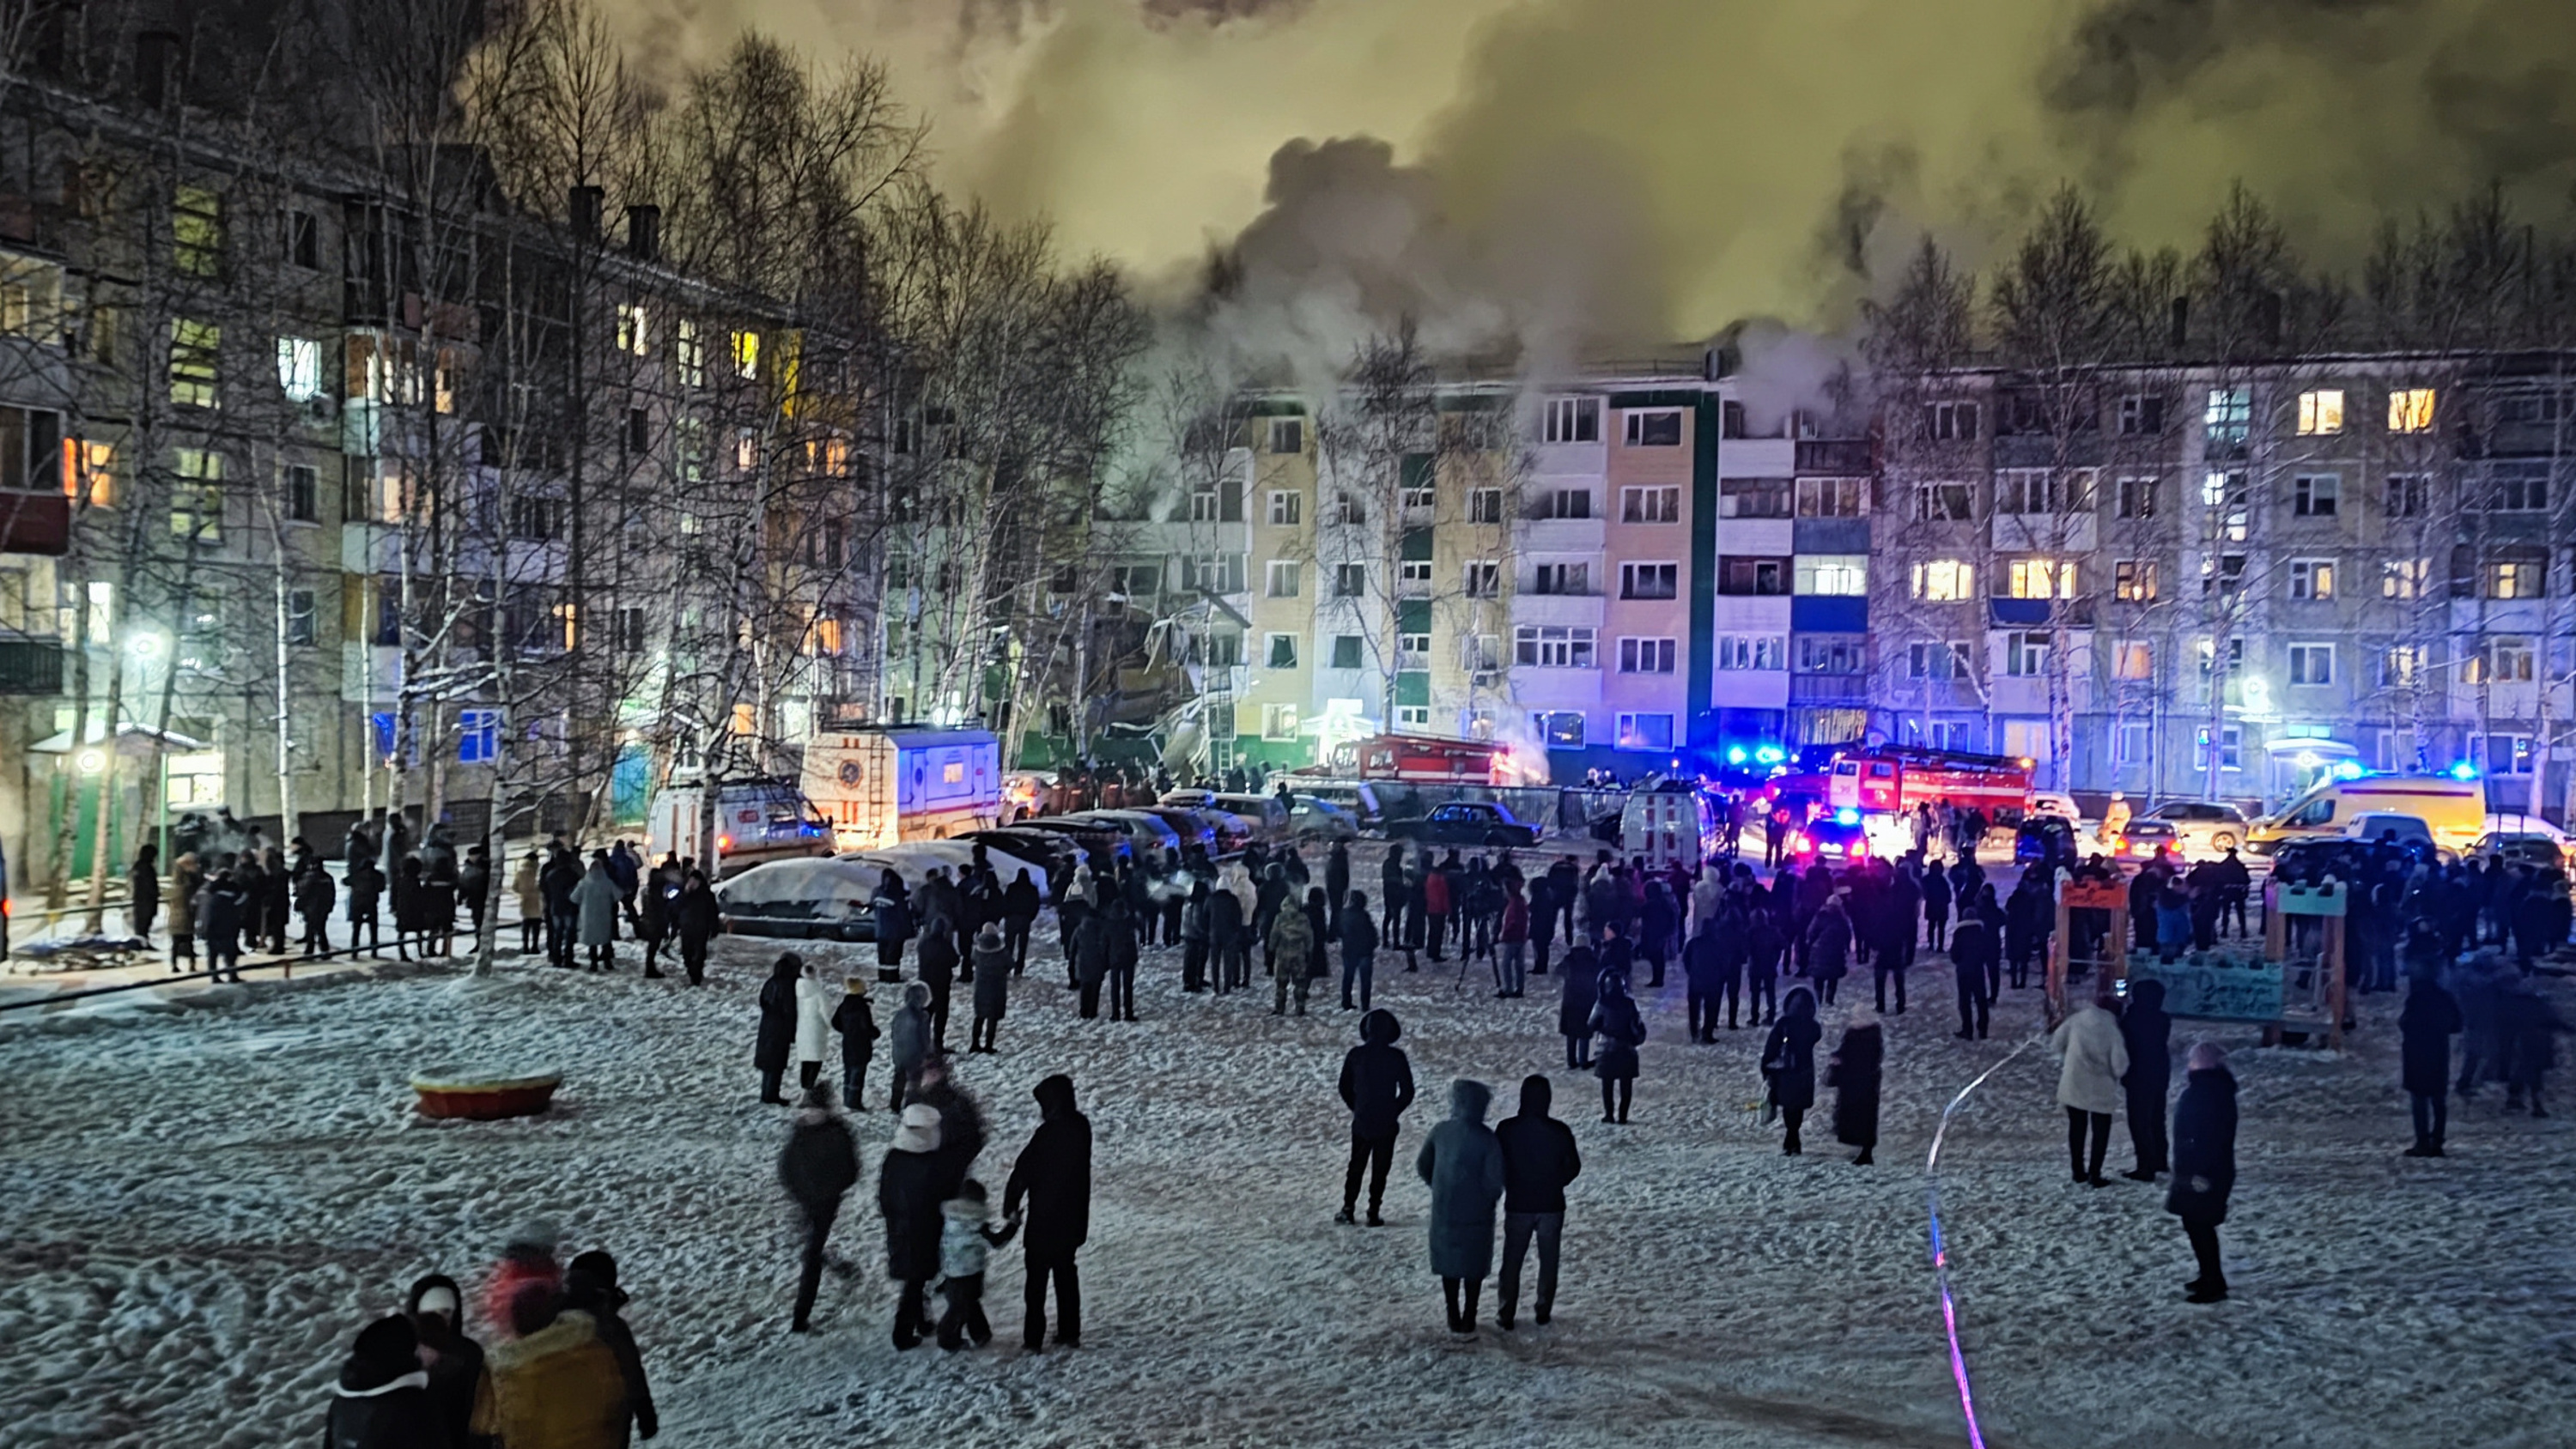 10 ноября 2019. Декабрь в городе. Люди в городе зимой. Взрыв дома в Нижневартовске.